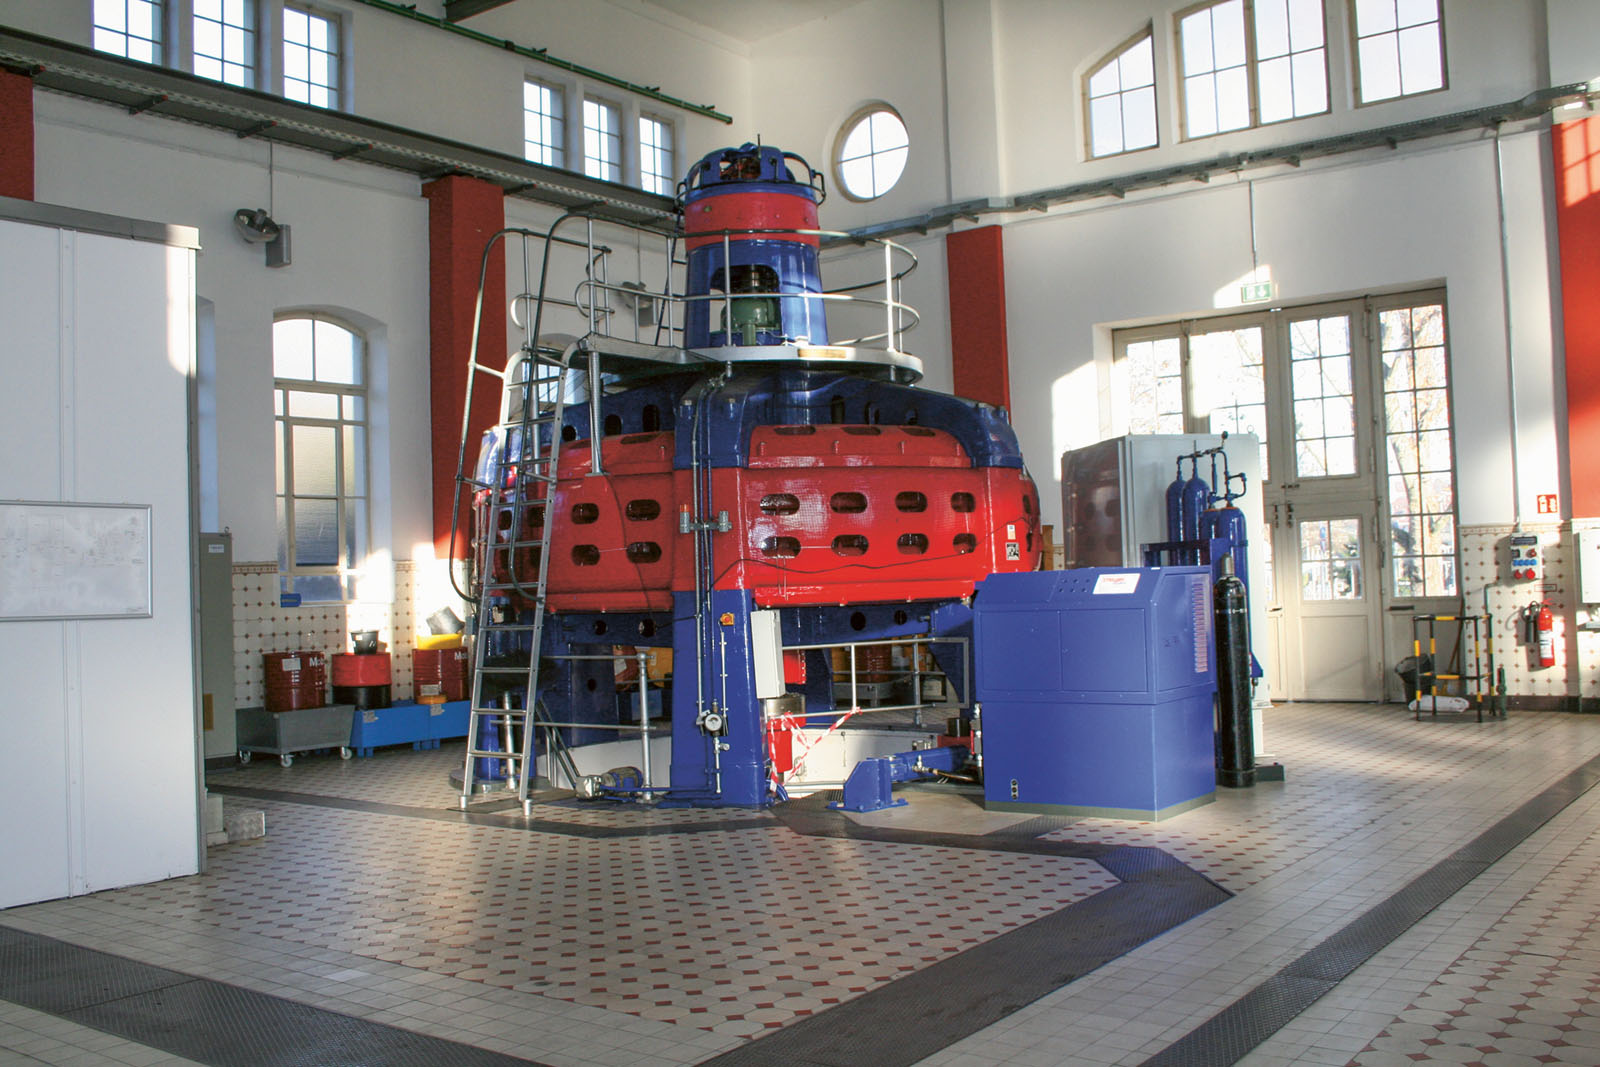 Lange Nacht der Museen Stuttgart - Wasserkraftwerk Untertürkheim Kaplanturbine